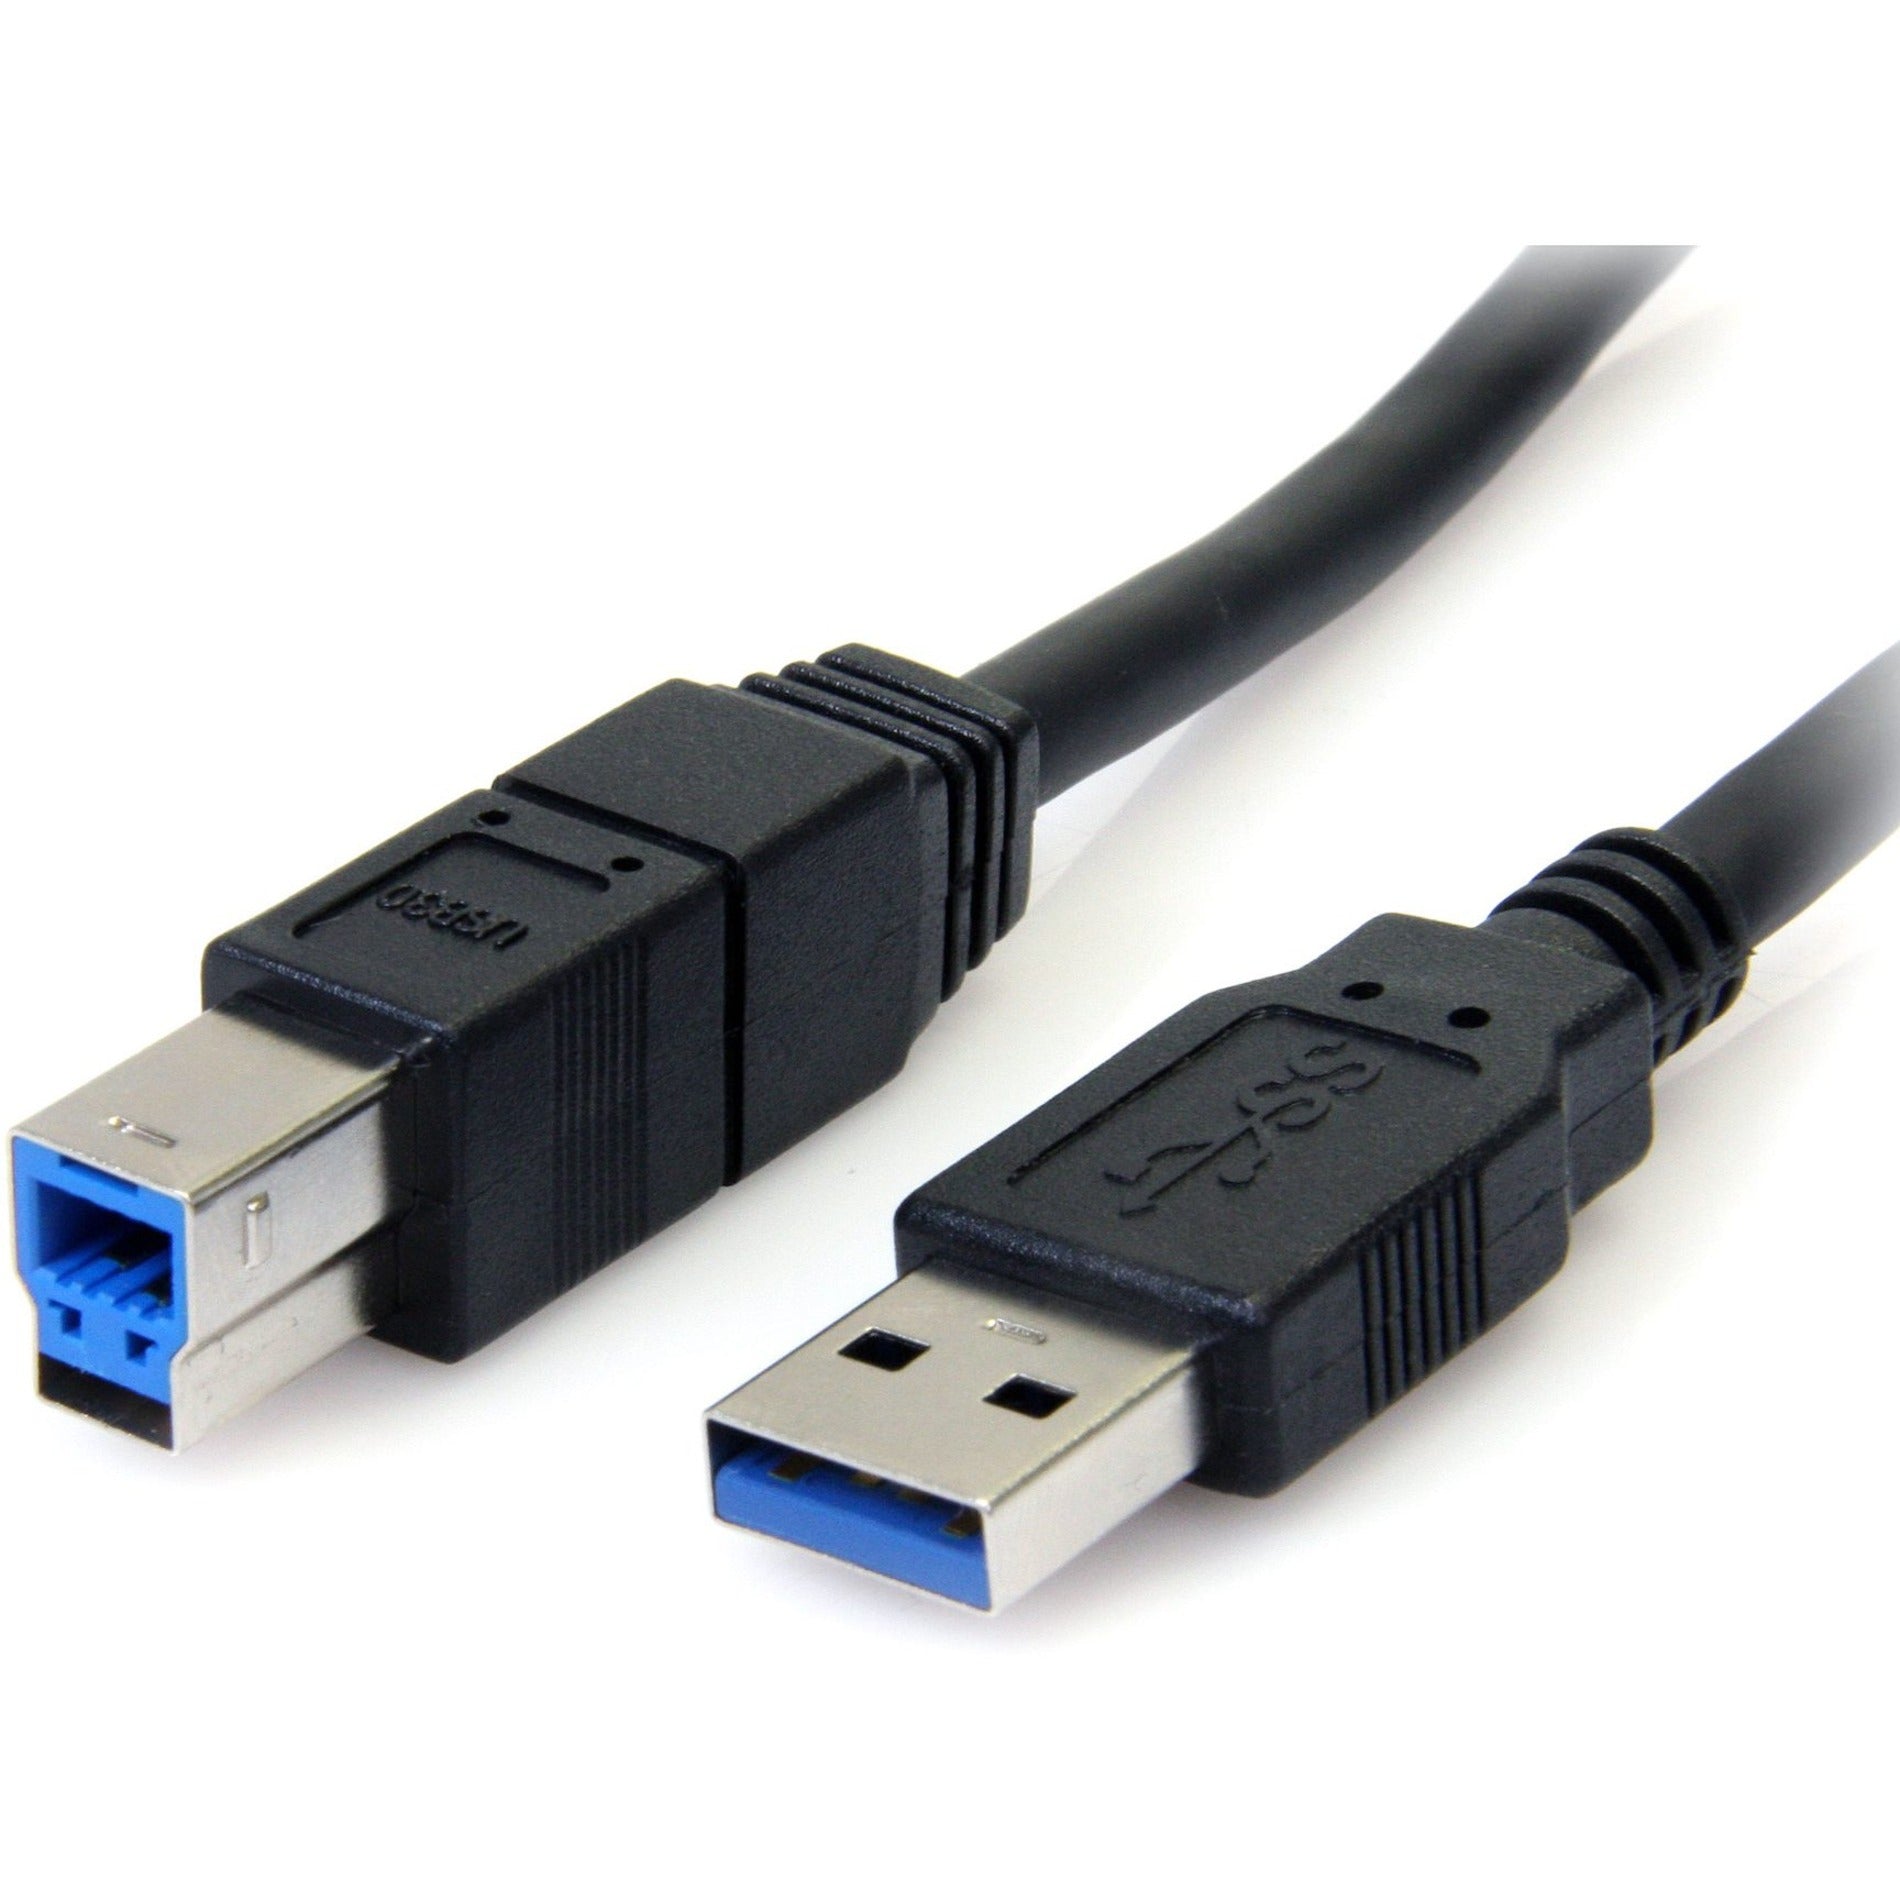 Marque: StarTech.com Câble USB 3.0 SuperSpeed noir de 6 pieds A vers B - M/M transfert de données haute vitesse garantie à vie